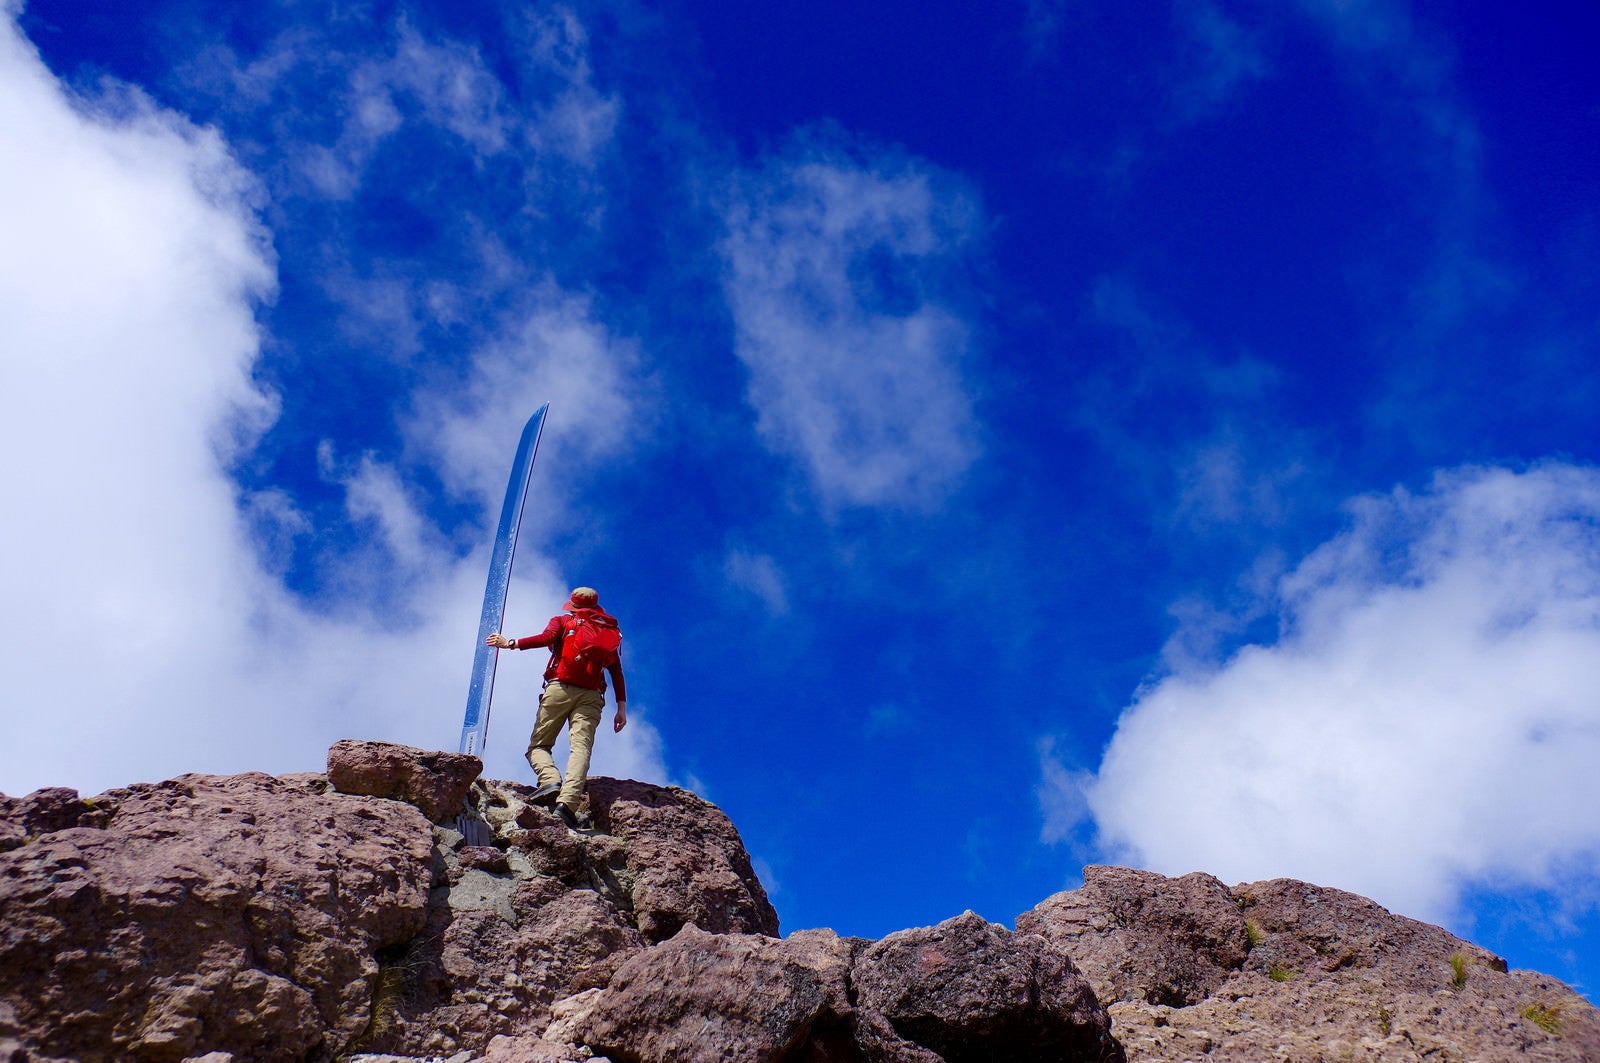 「男体山の刀と赤い登山者」の写真